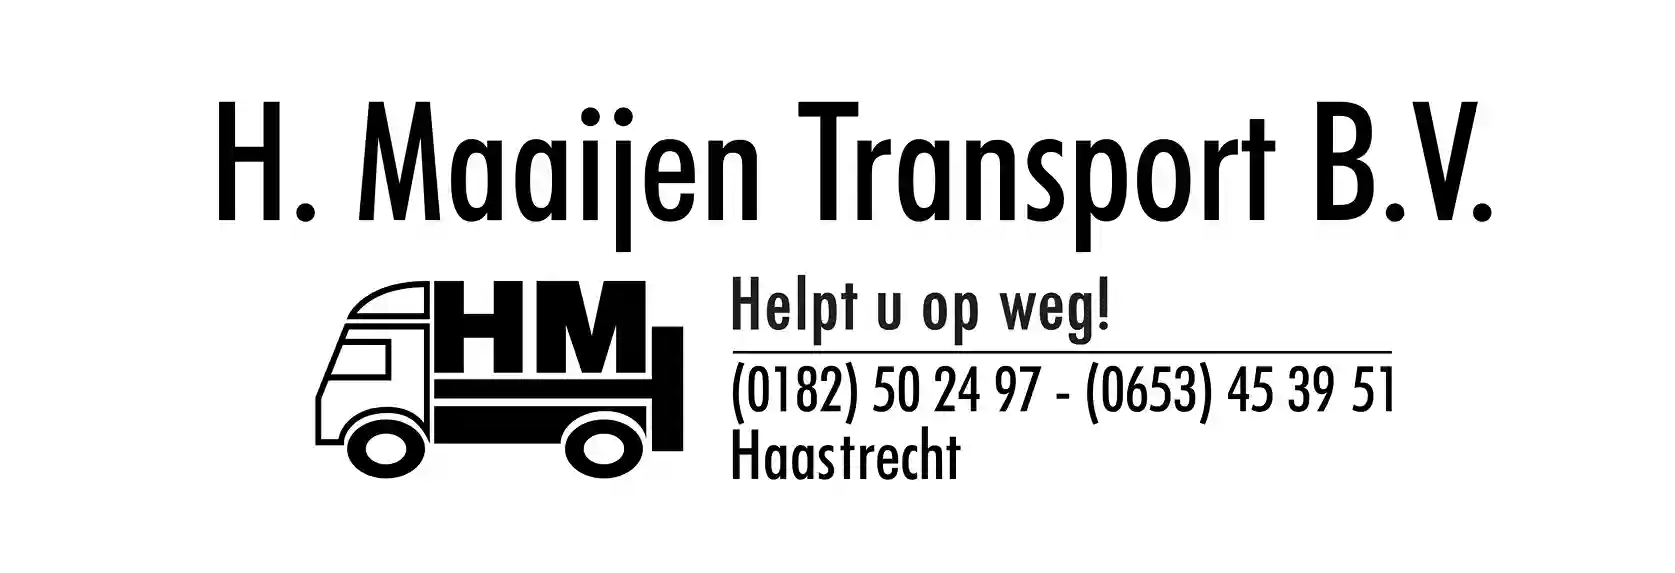 H. Maaijen Transport B.V. 150x50 (1)_11zon